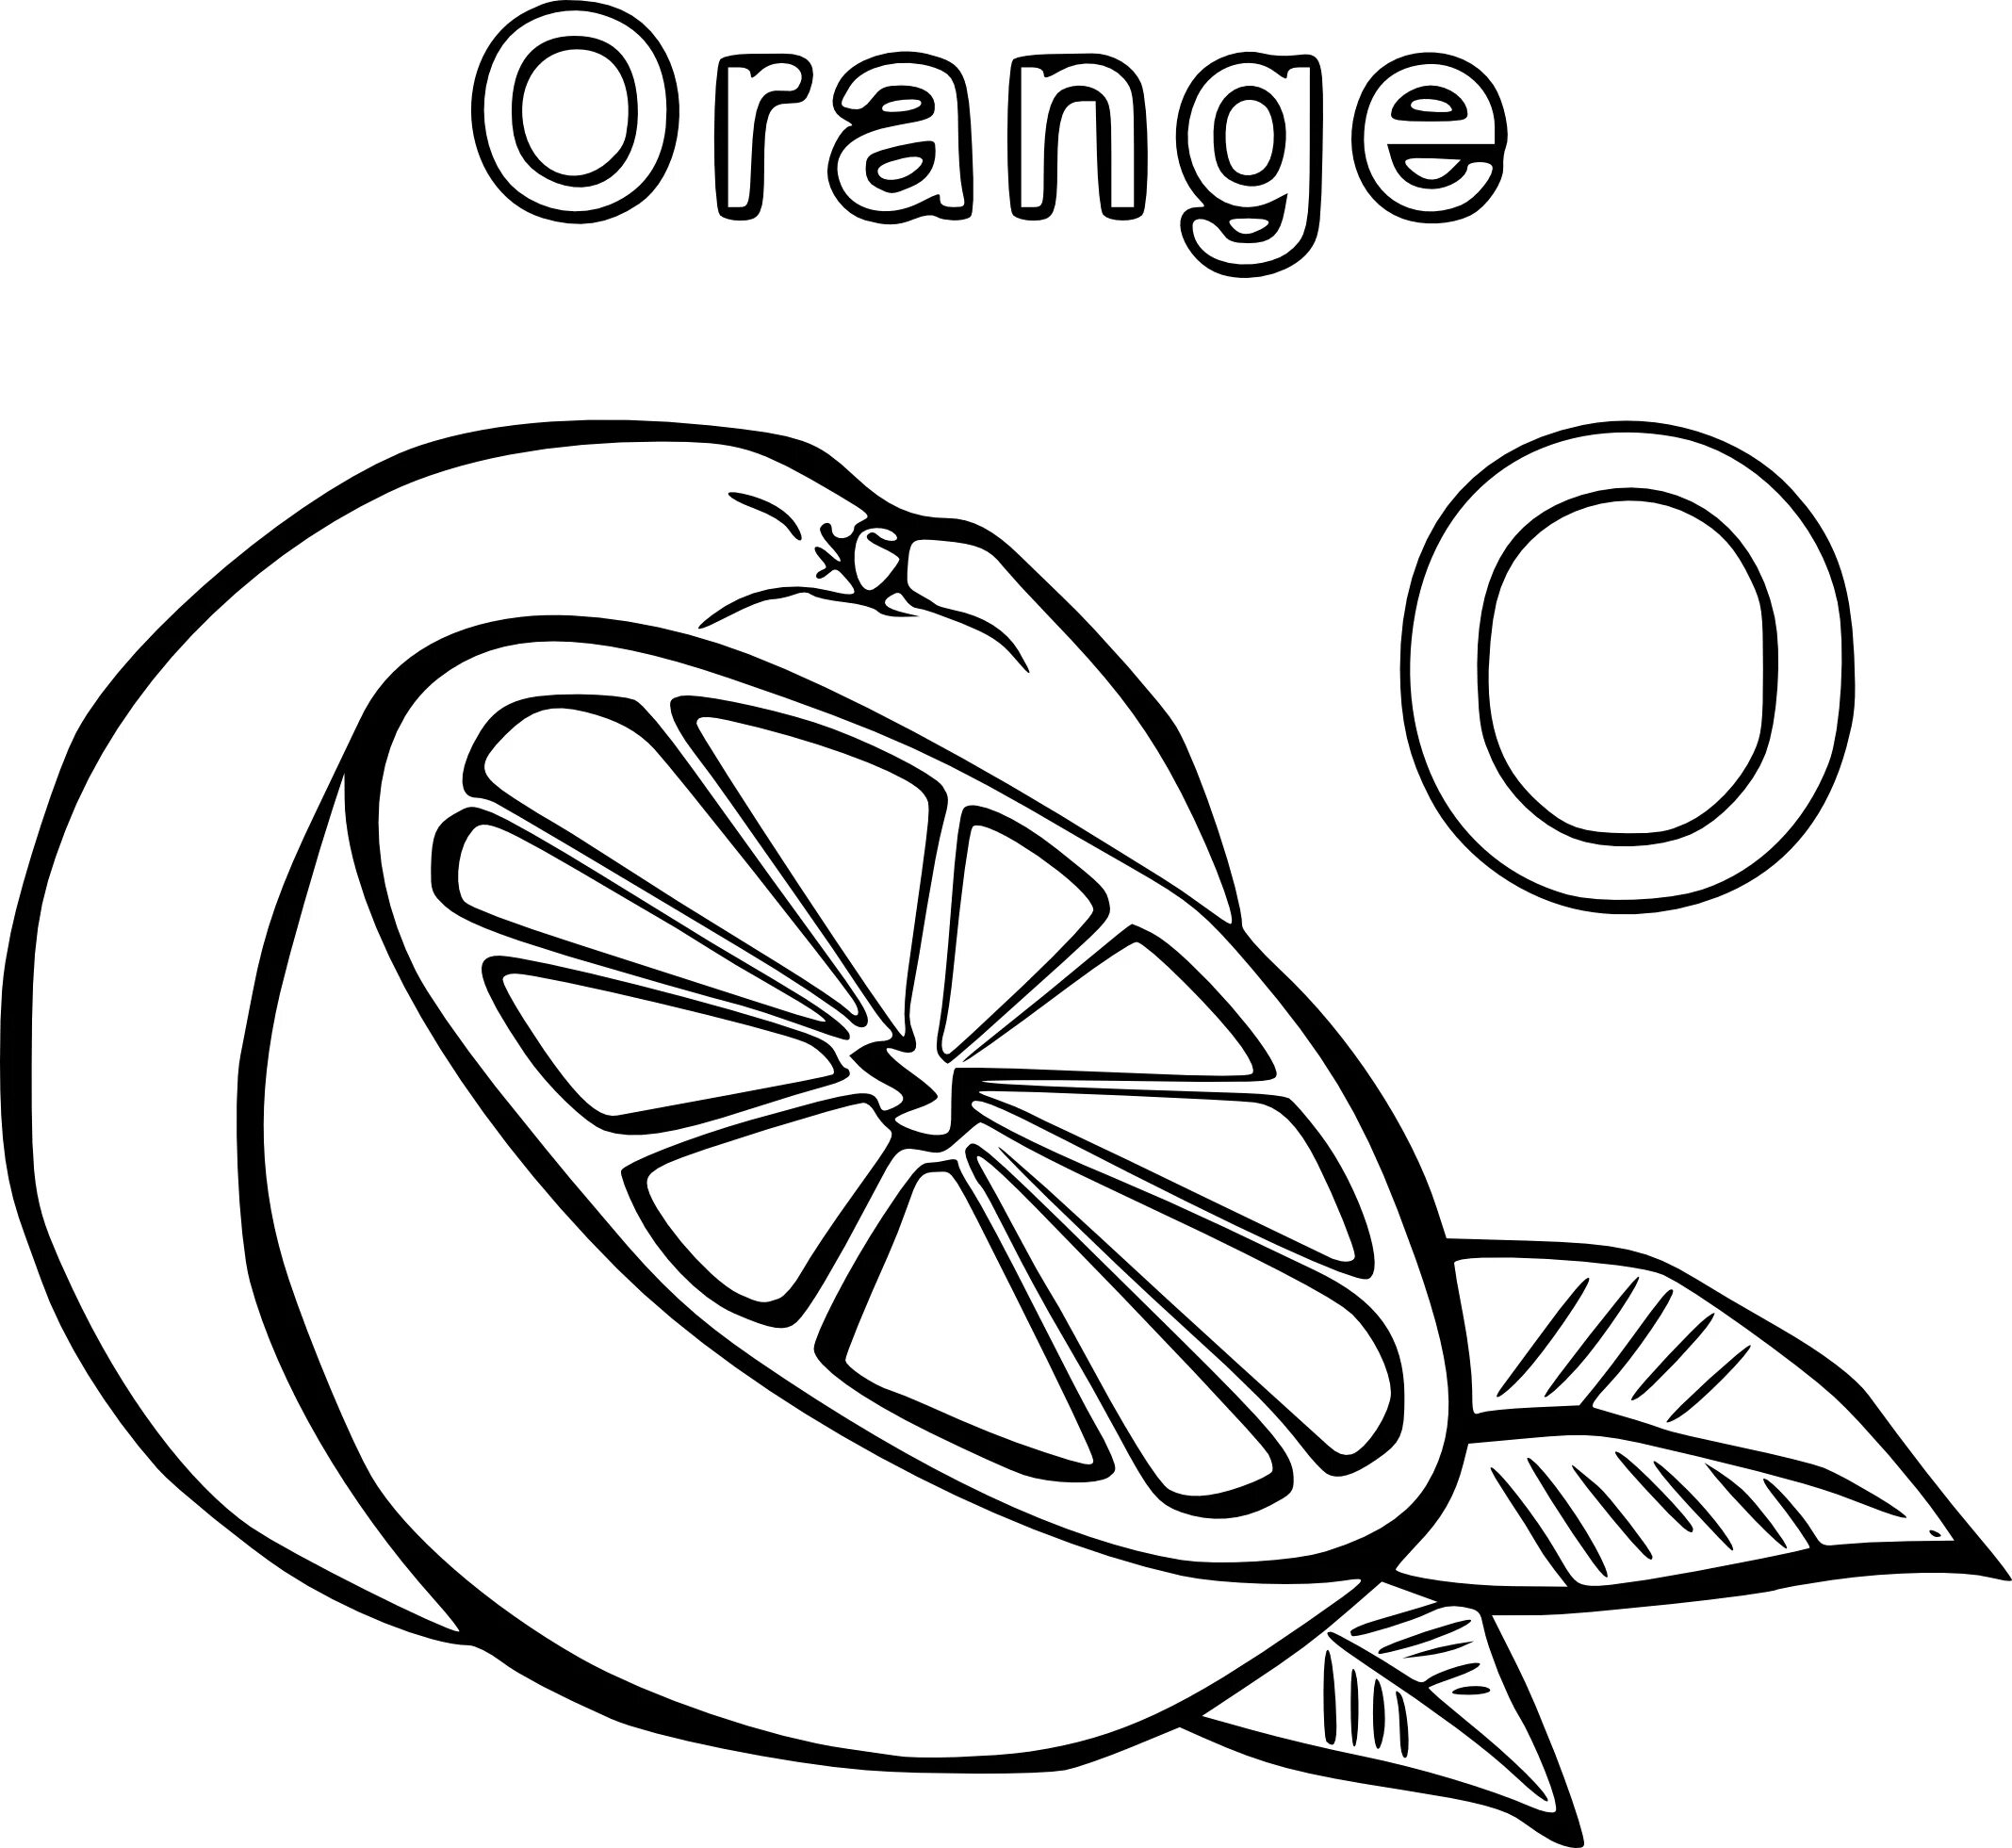 Orange #6